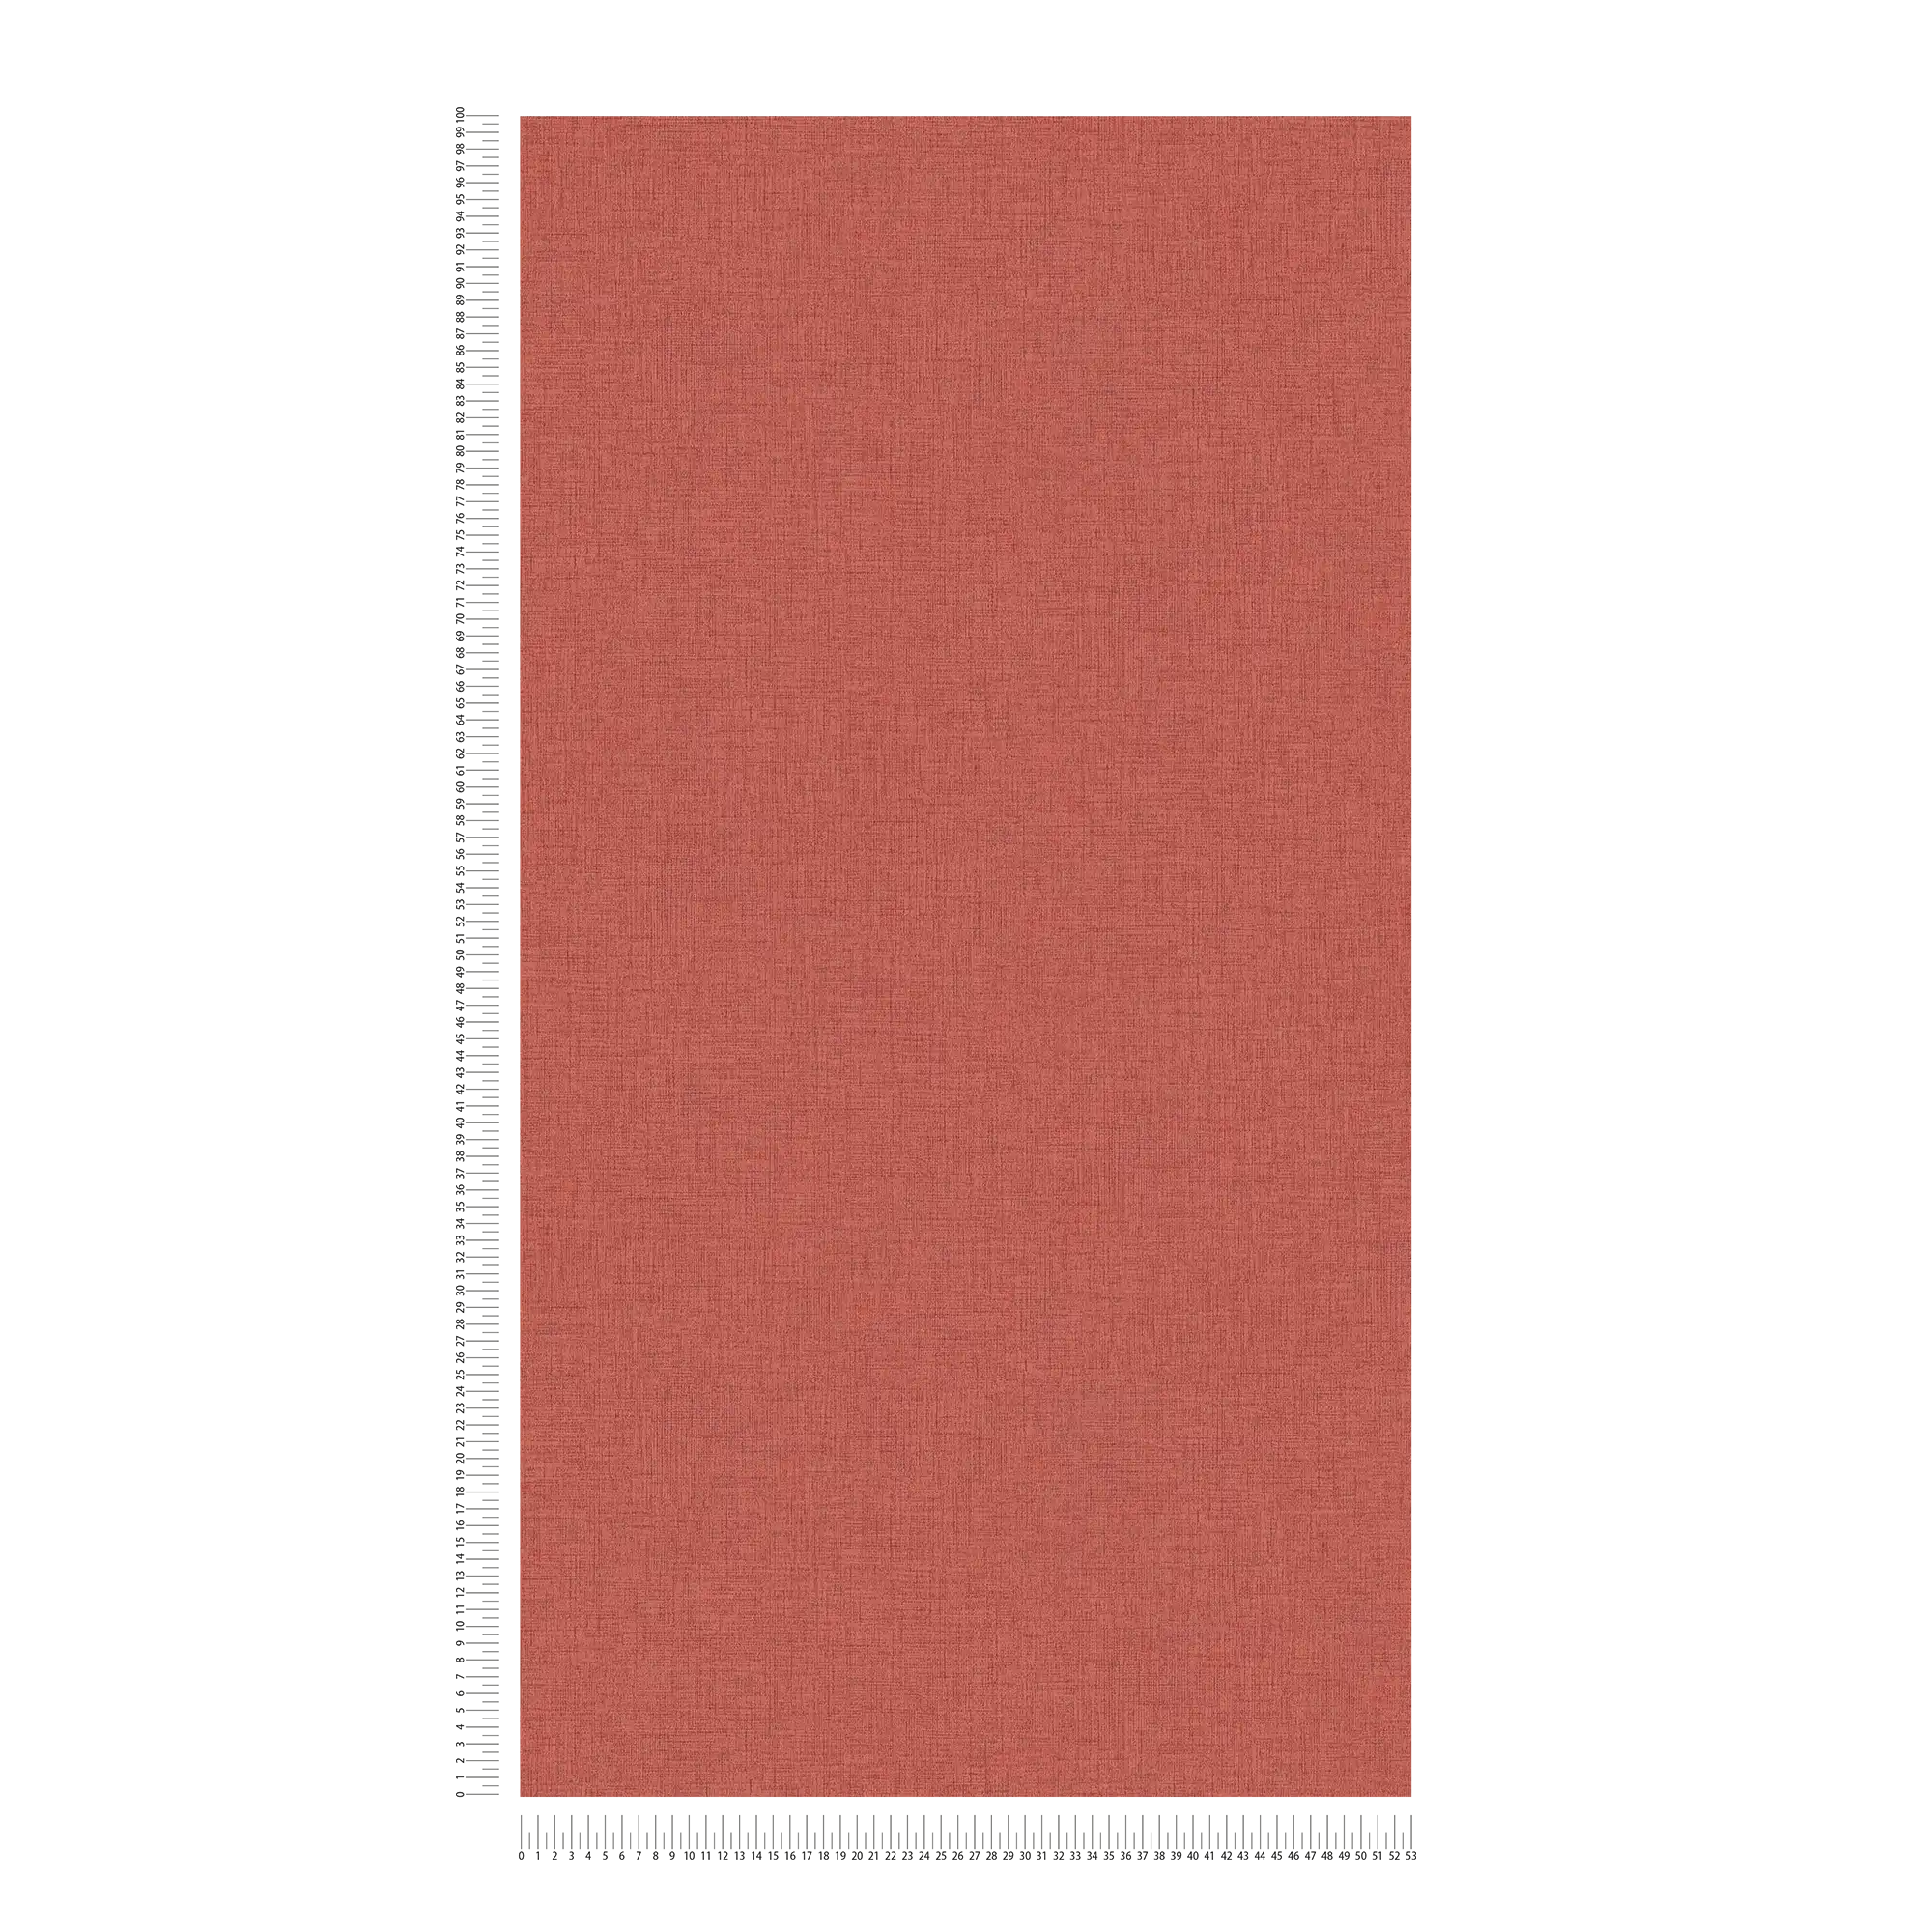             Carta da parati in tessuto non tessuto a tinta unita con aspetto tessile - rosso
        